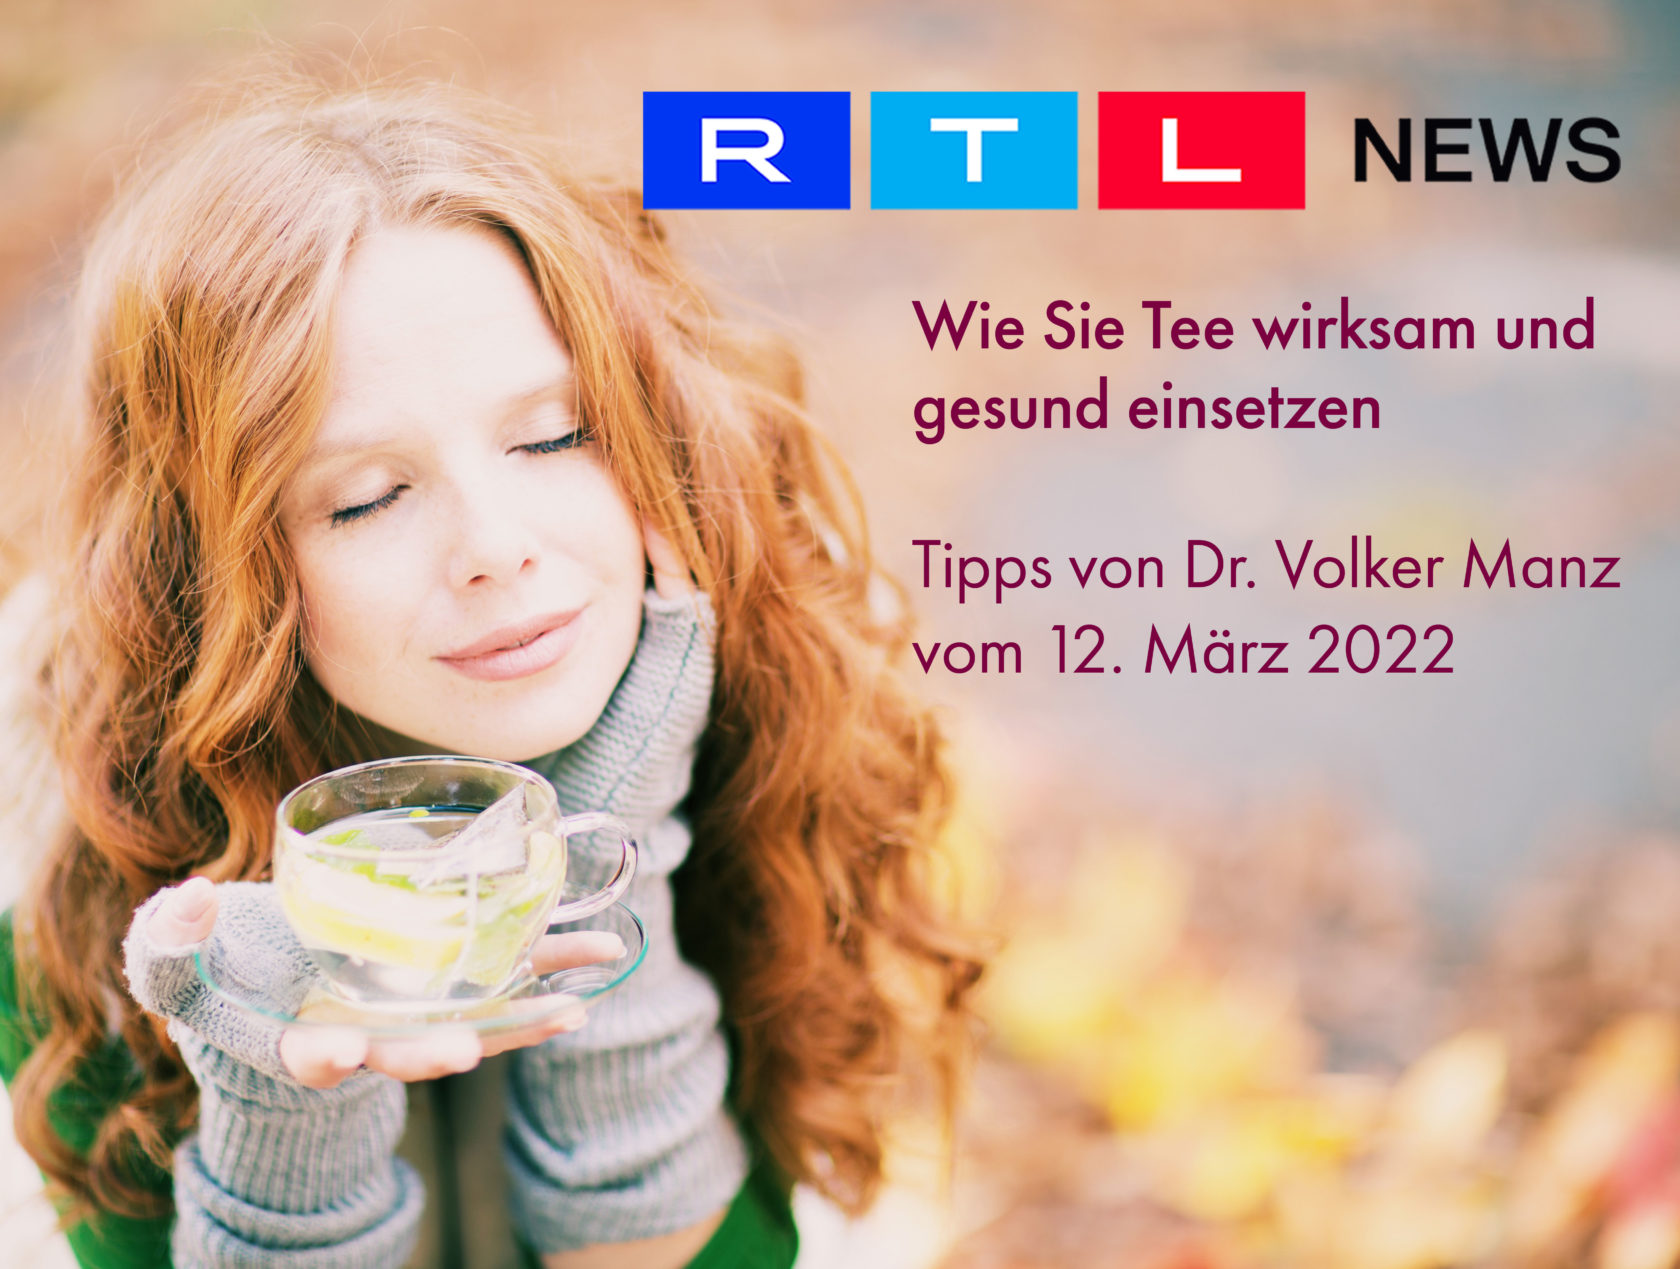 Dr. Volker Manz vom SI Ernährungsinstitut gibt Tipps zum Thema Tee bei RTL extra